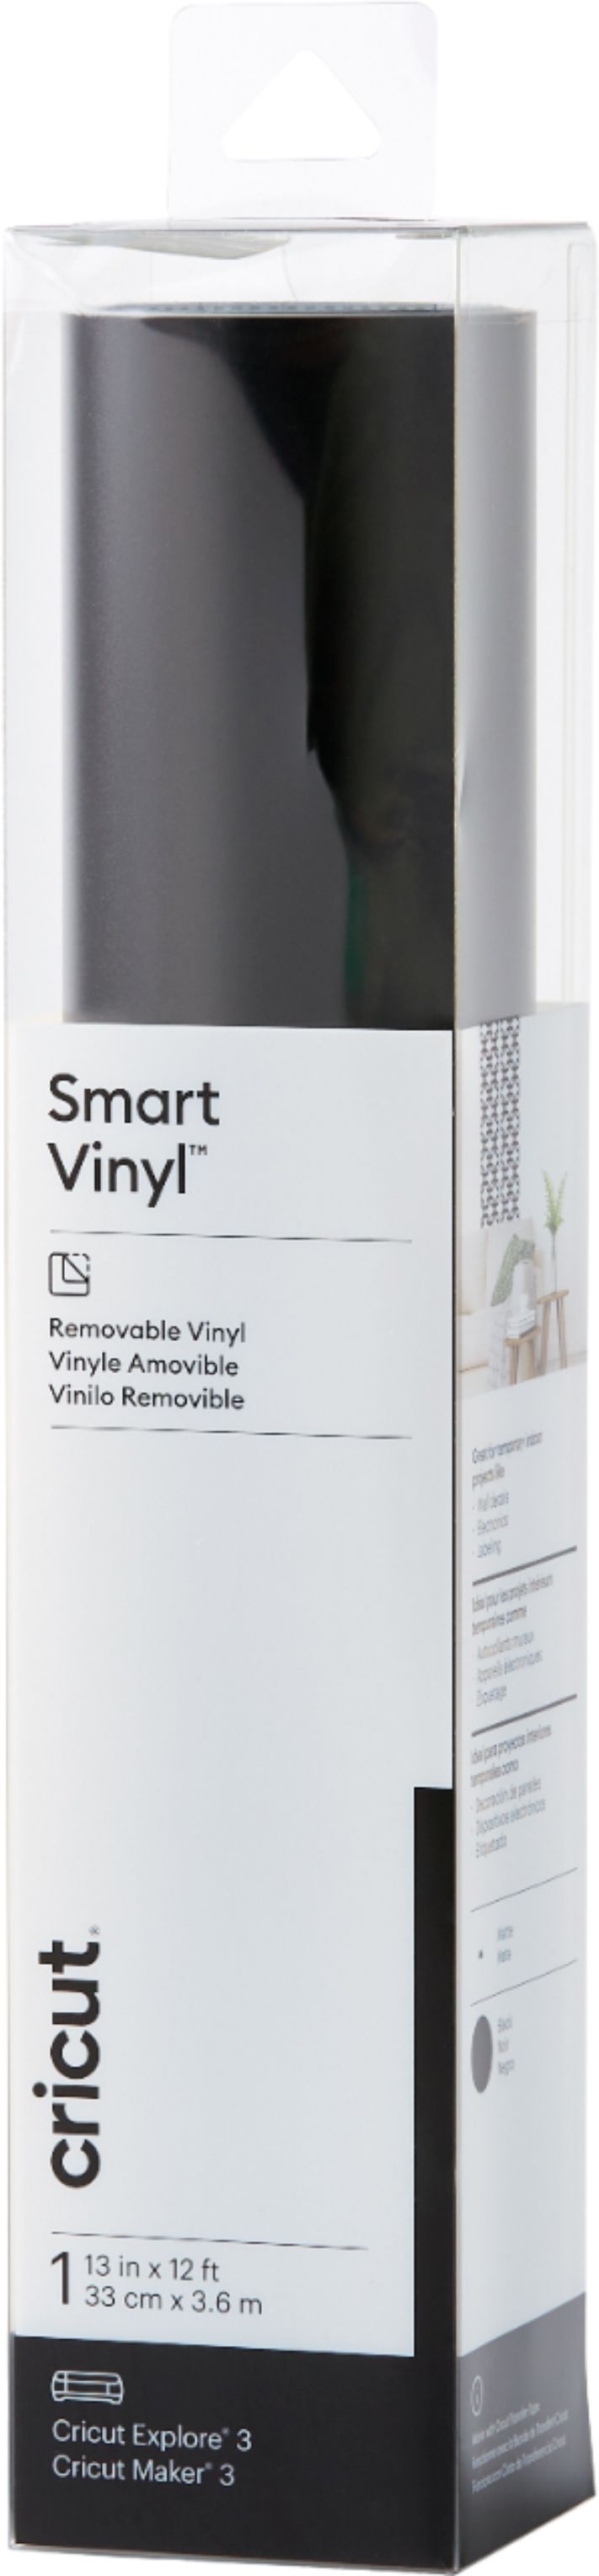 Cricut Smart Vinyl – Removable 12 ft 2008933 - Best Buy